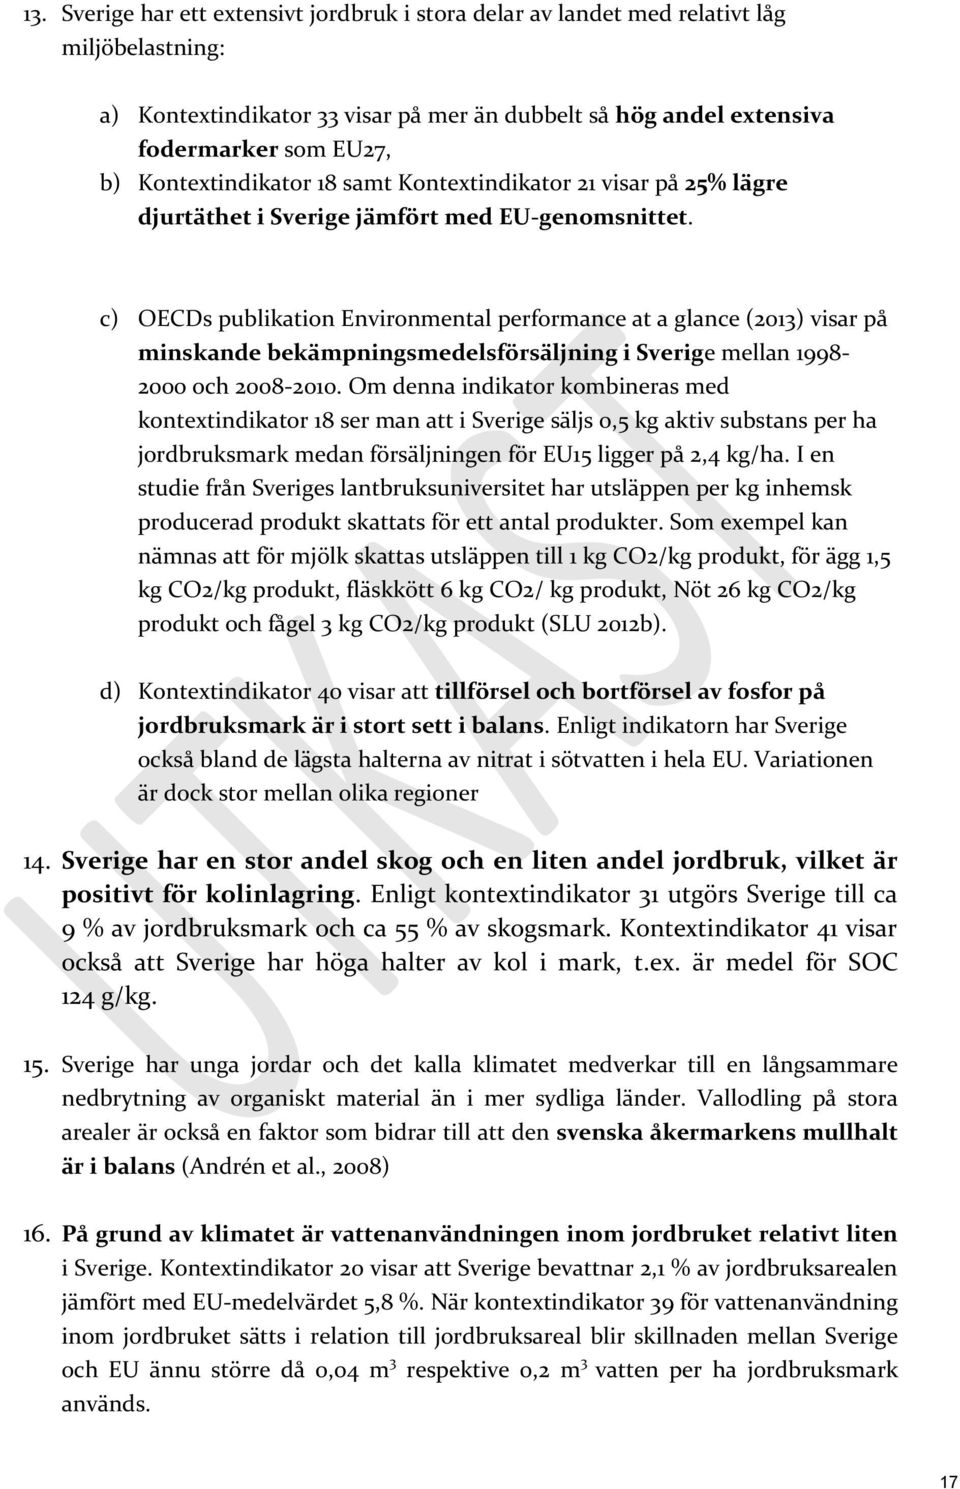 c) OECDs publikation Environmental performance at a glance (2013) visar på minskande bekämpningsmedelsförsäljning i Sverige mellan 1998-2000 och 2008-2010.